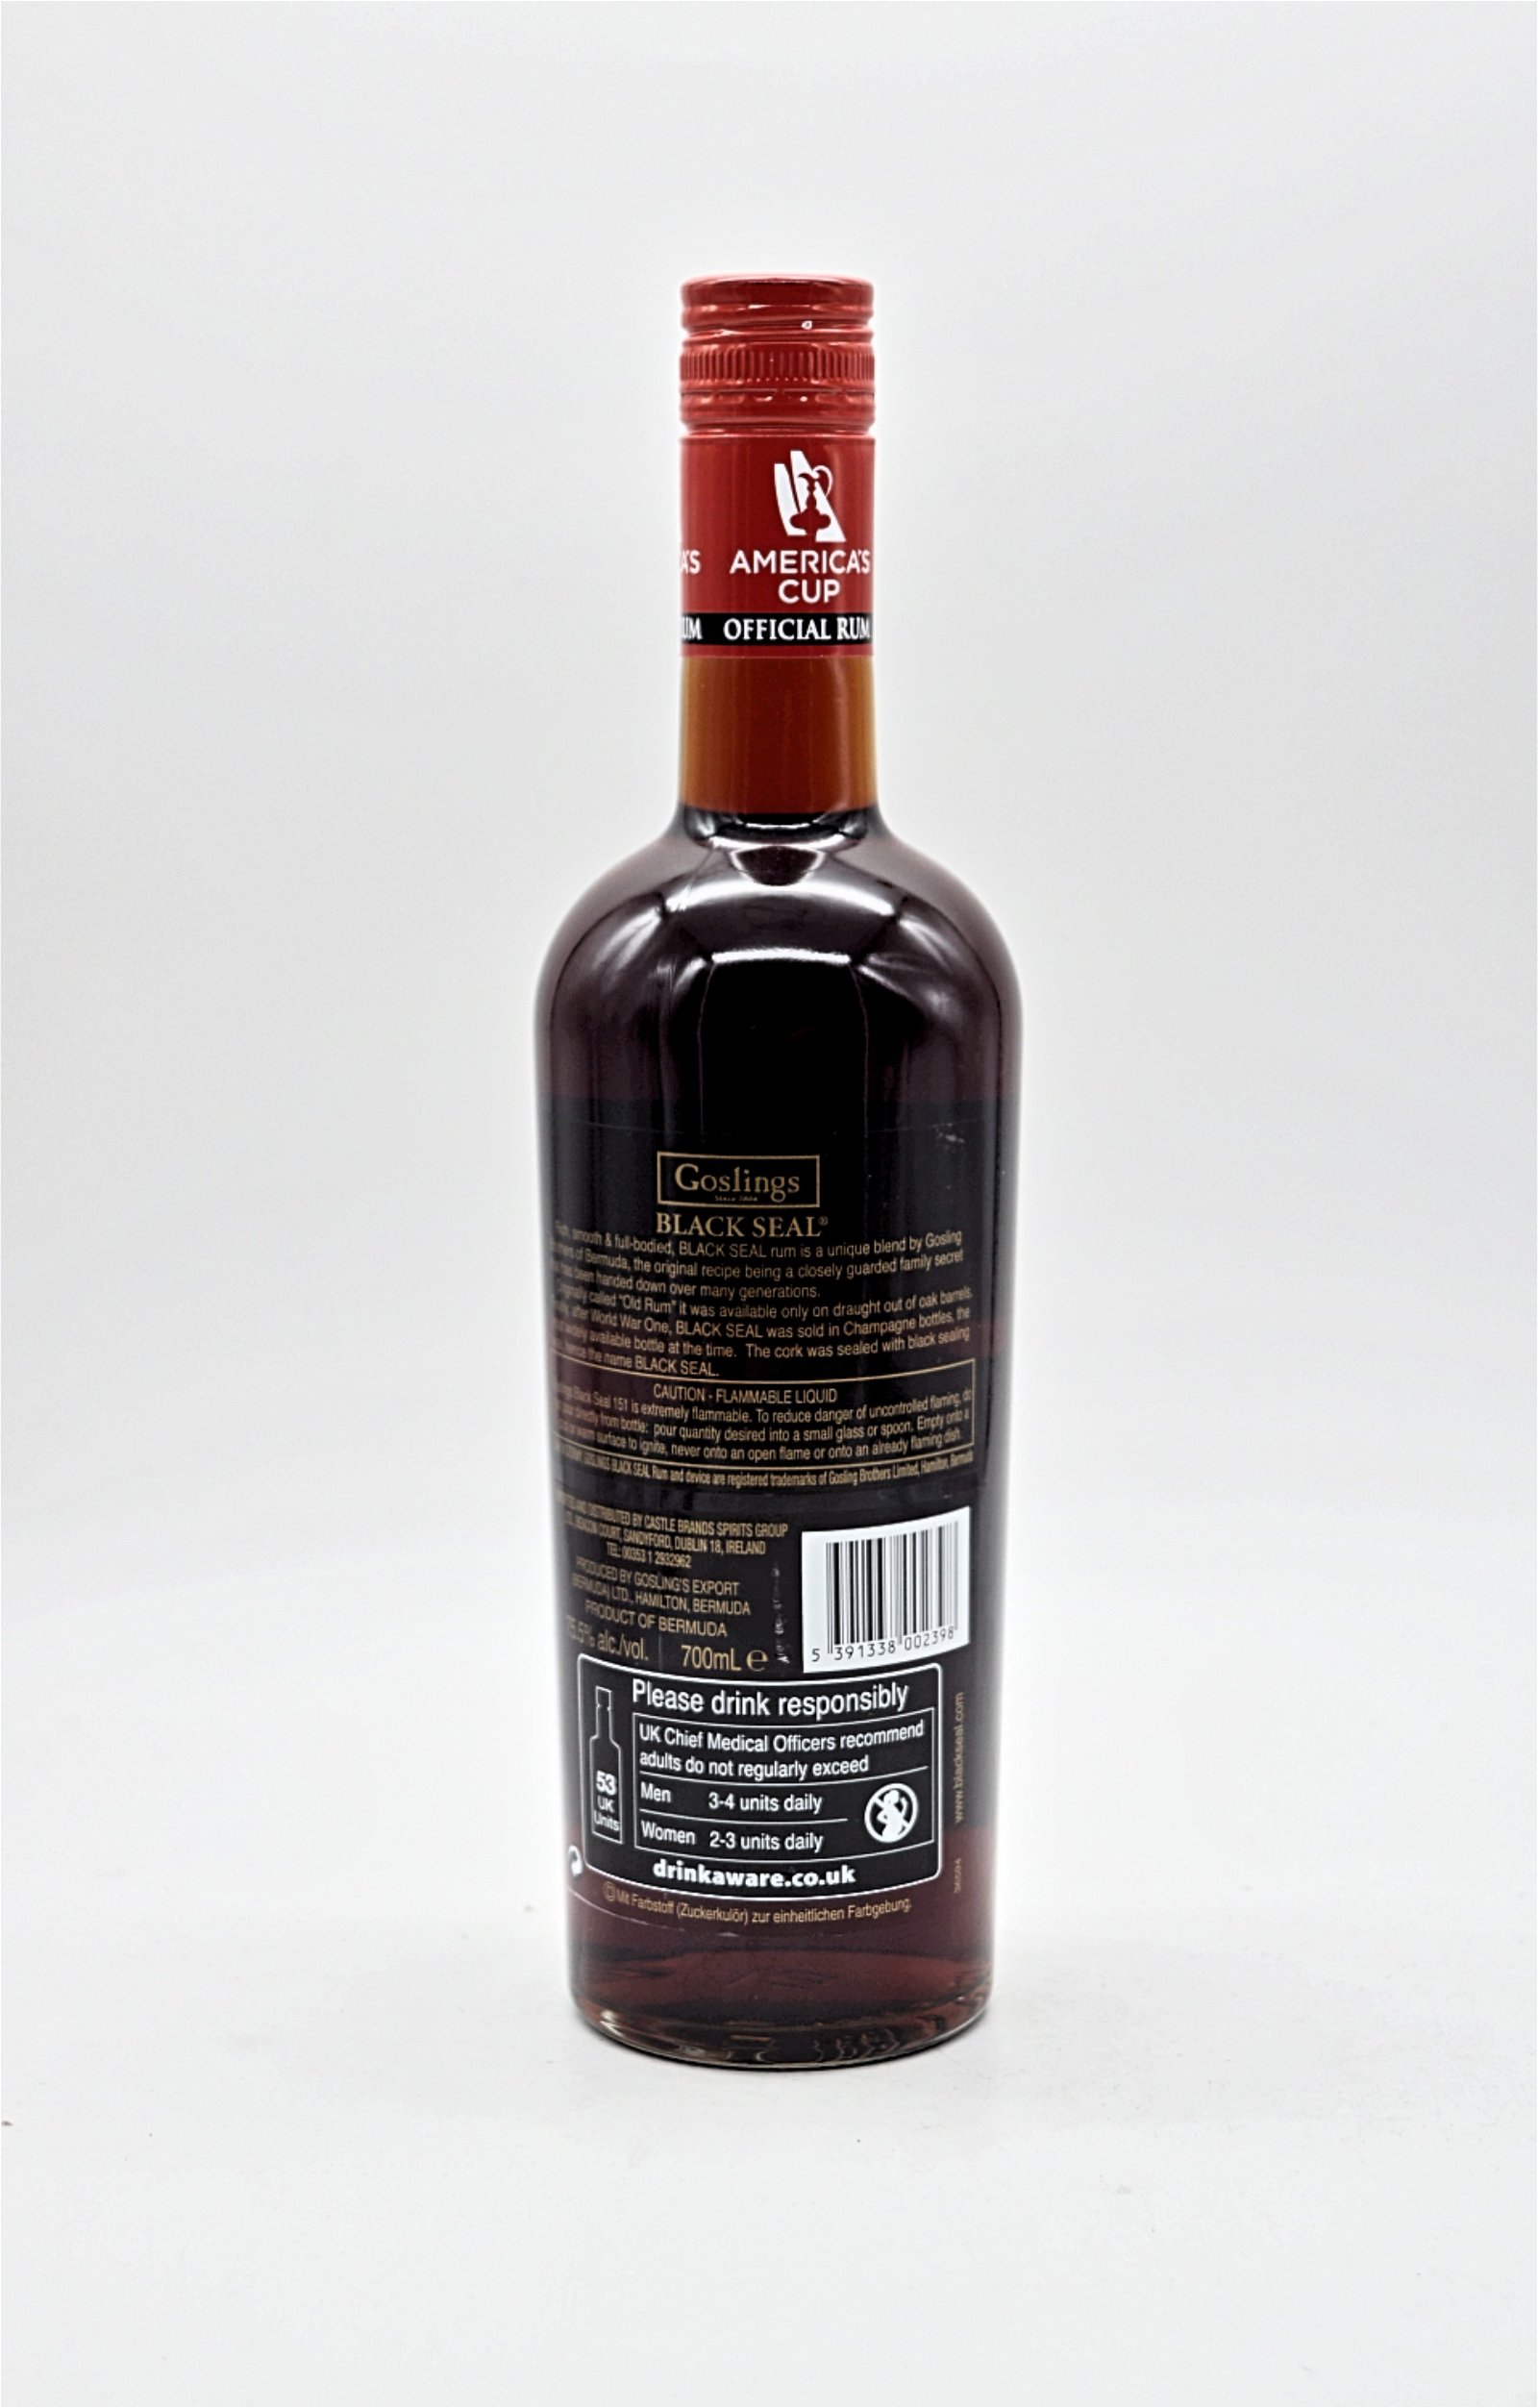 Gosling Black Seal Bermuda Black Rum 151 Proof